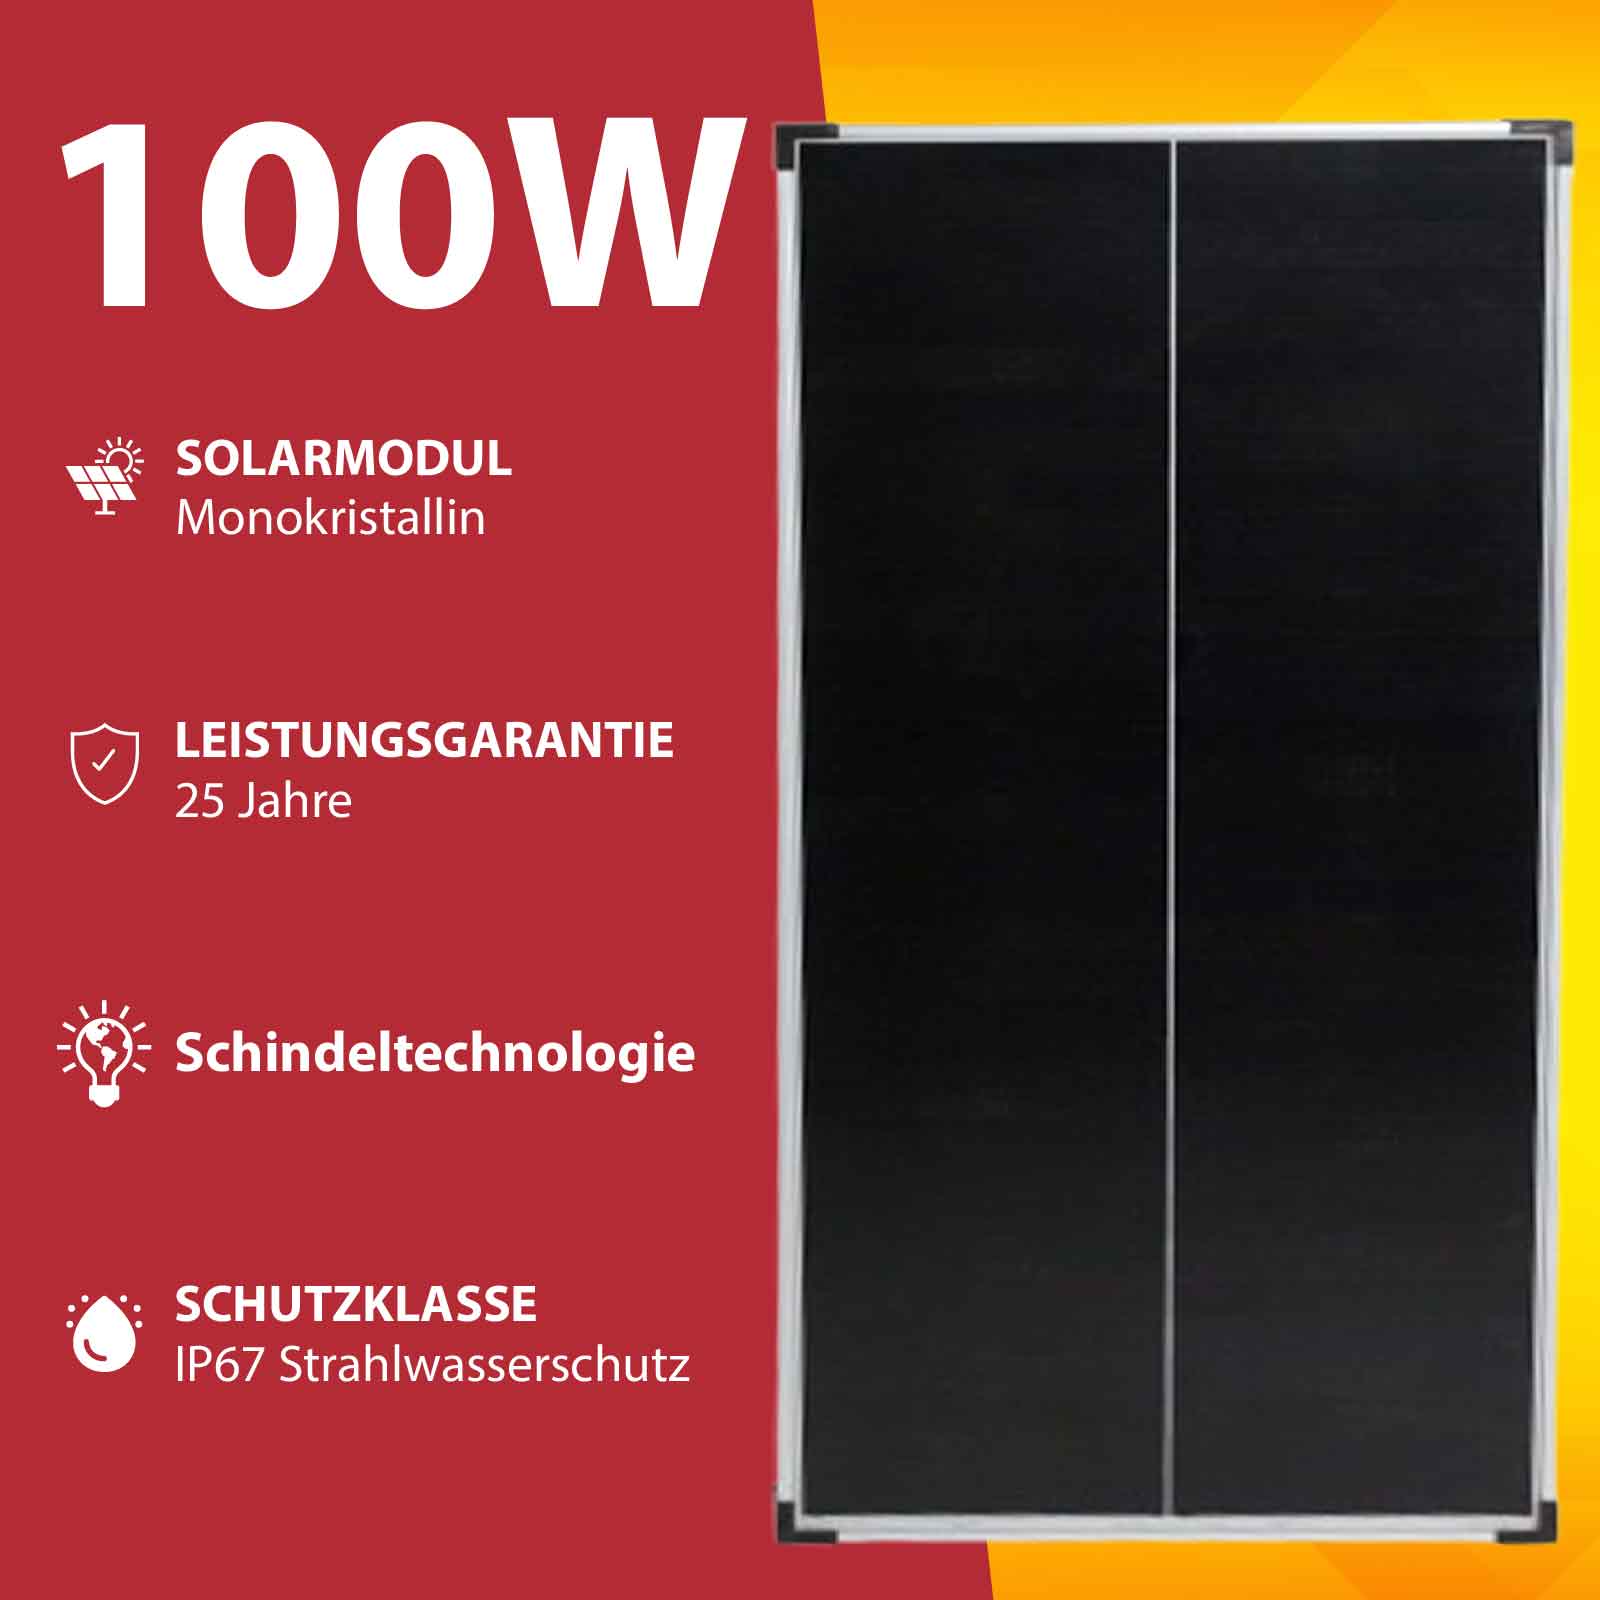 300 Watt Solar Komplettset - Photovoltaik Solaranlage für Wohnmobile und Wohnwagen